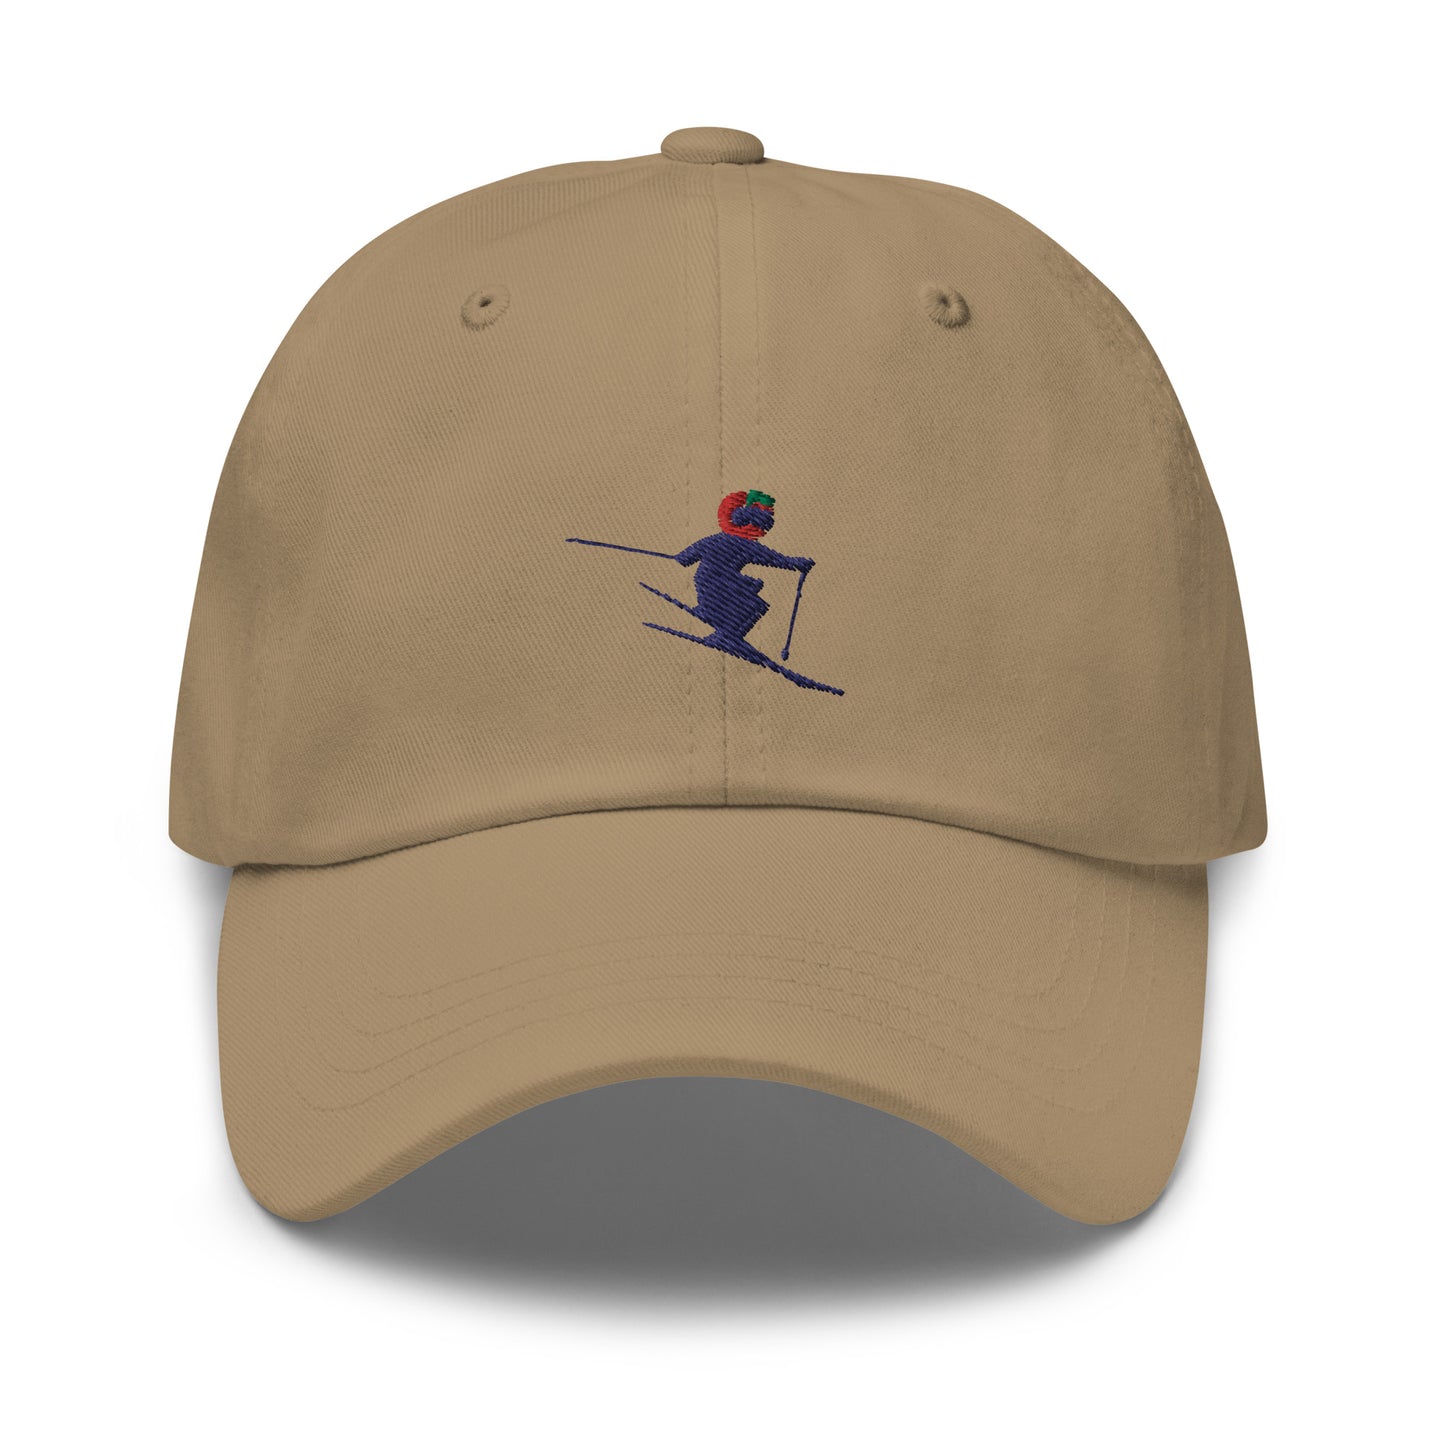 The Ski NYC Chino Hat